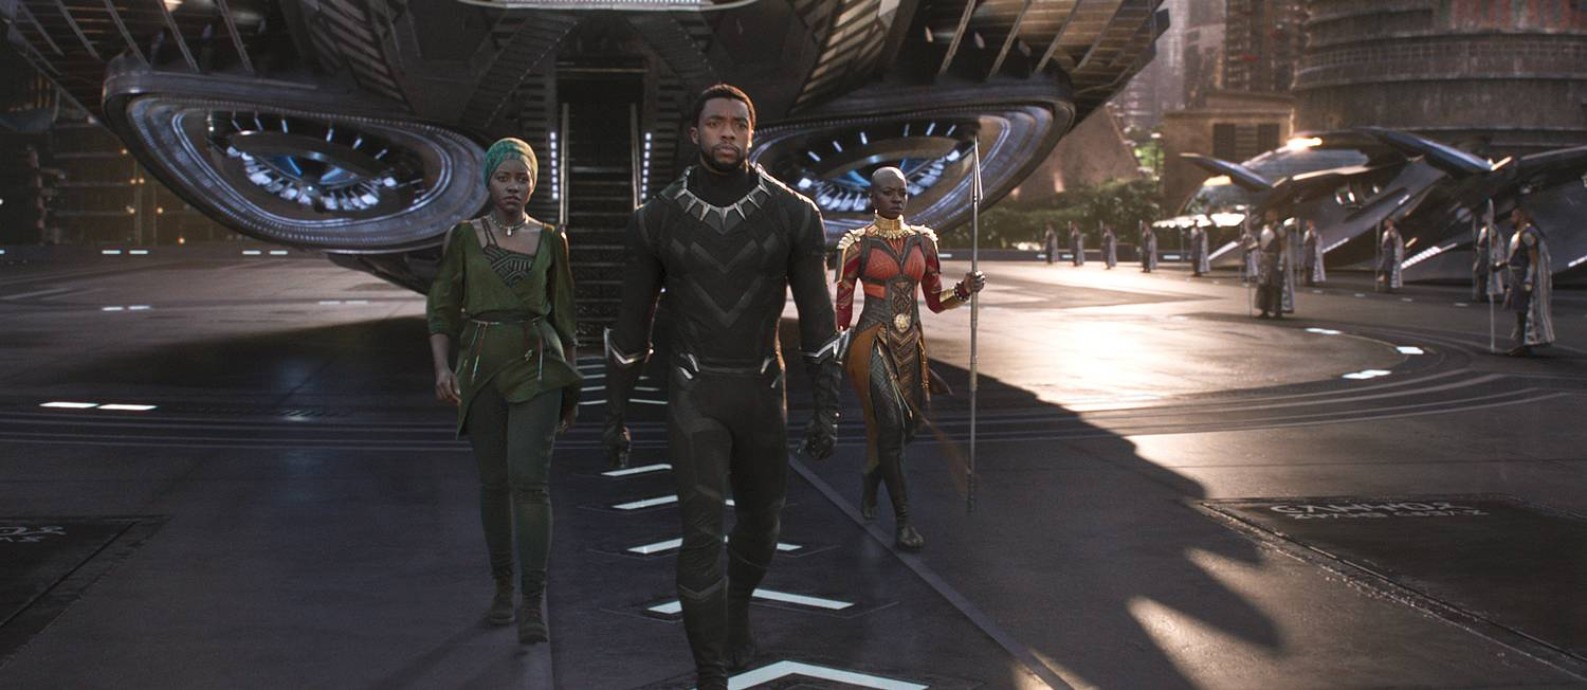 O ator Chadwick Boseman (ao centro) interpreta o super-heróis protagonista Foto: Divulgação